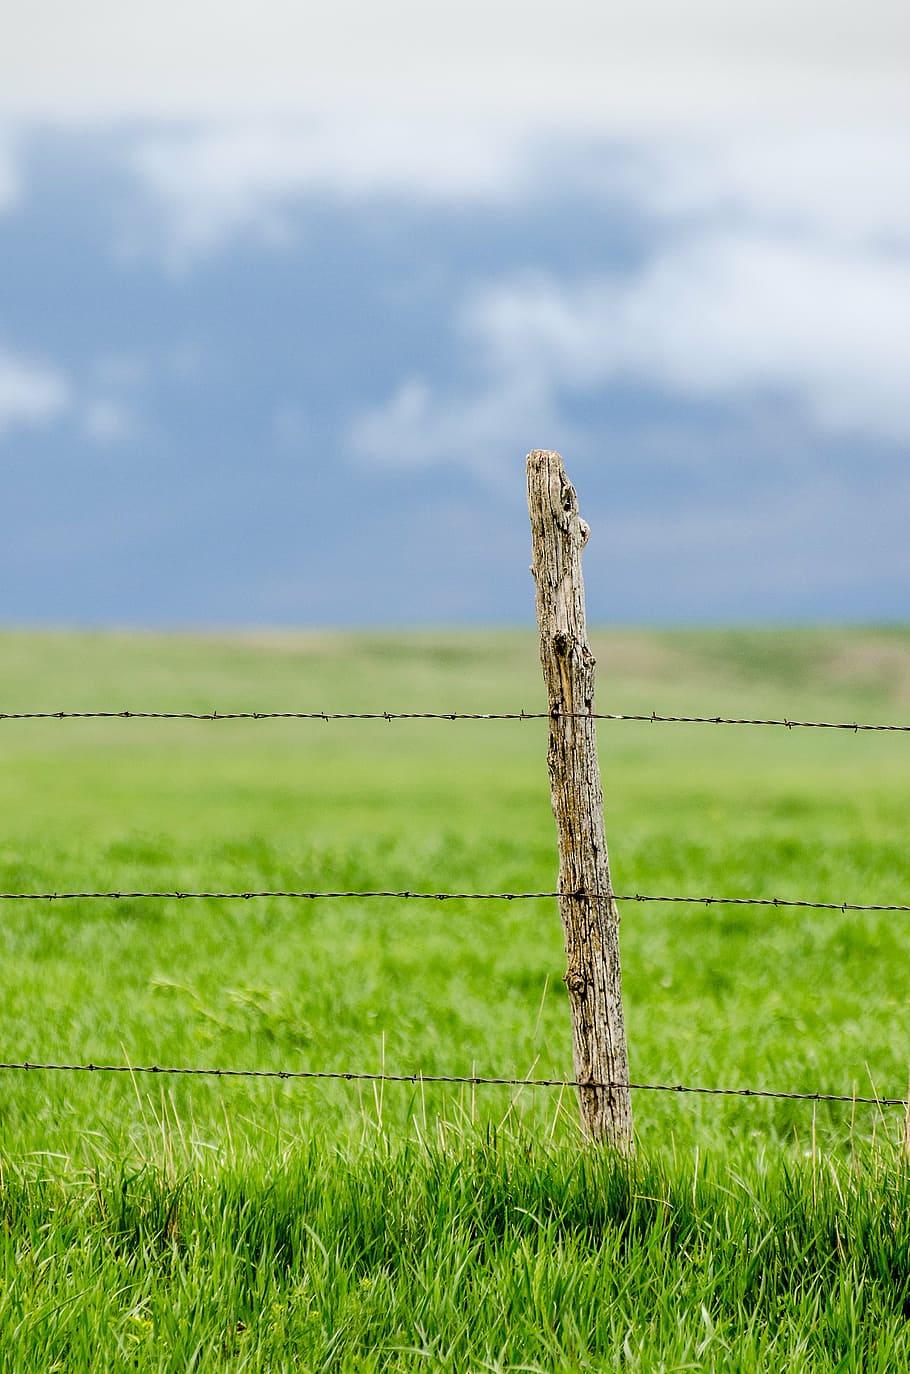 poste de la cerca, alambre de púas, pasto, verde, cielo azul, azul, rancho, alambre, cerca, púas